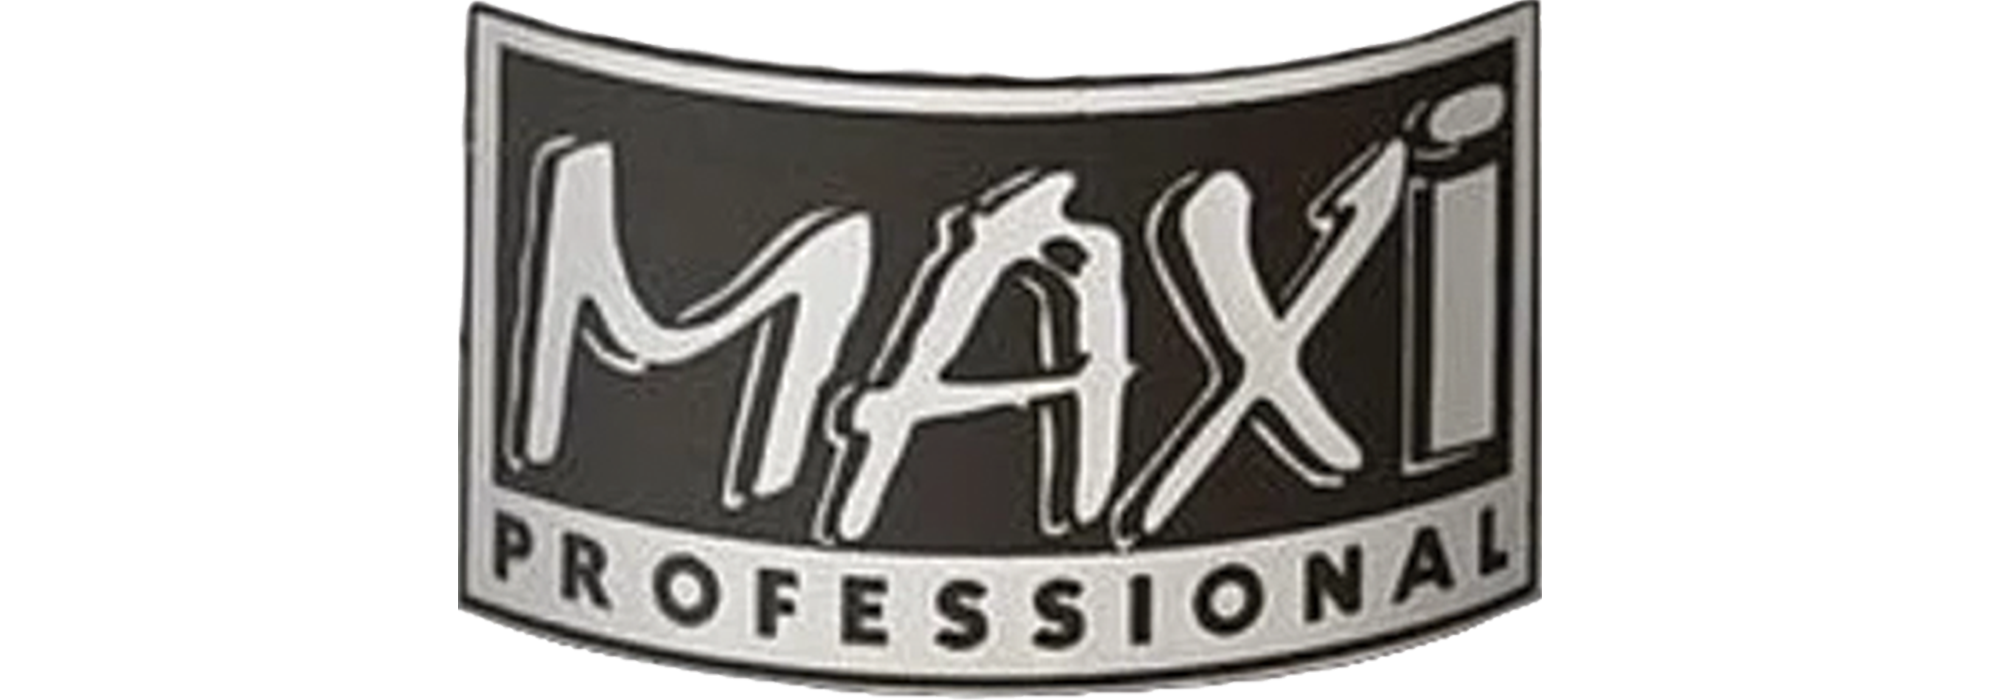 MAXI PROFESSIONAL Maximum Hair Glue, 1oz - DUKANEE BEAUTY SUPPLY